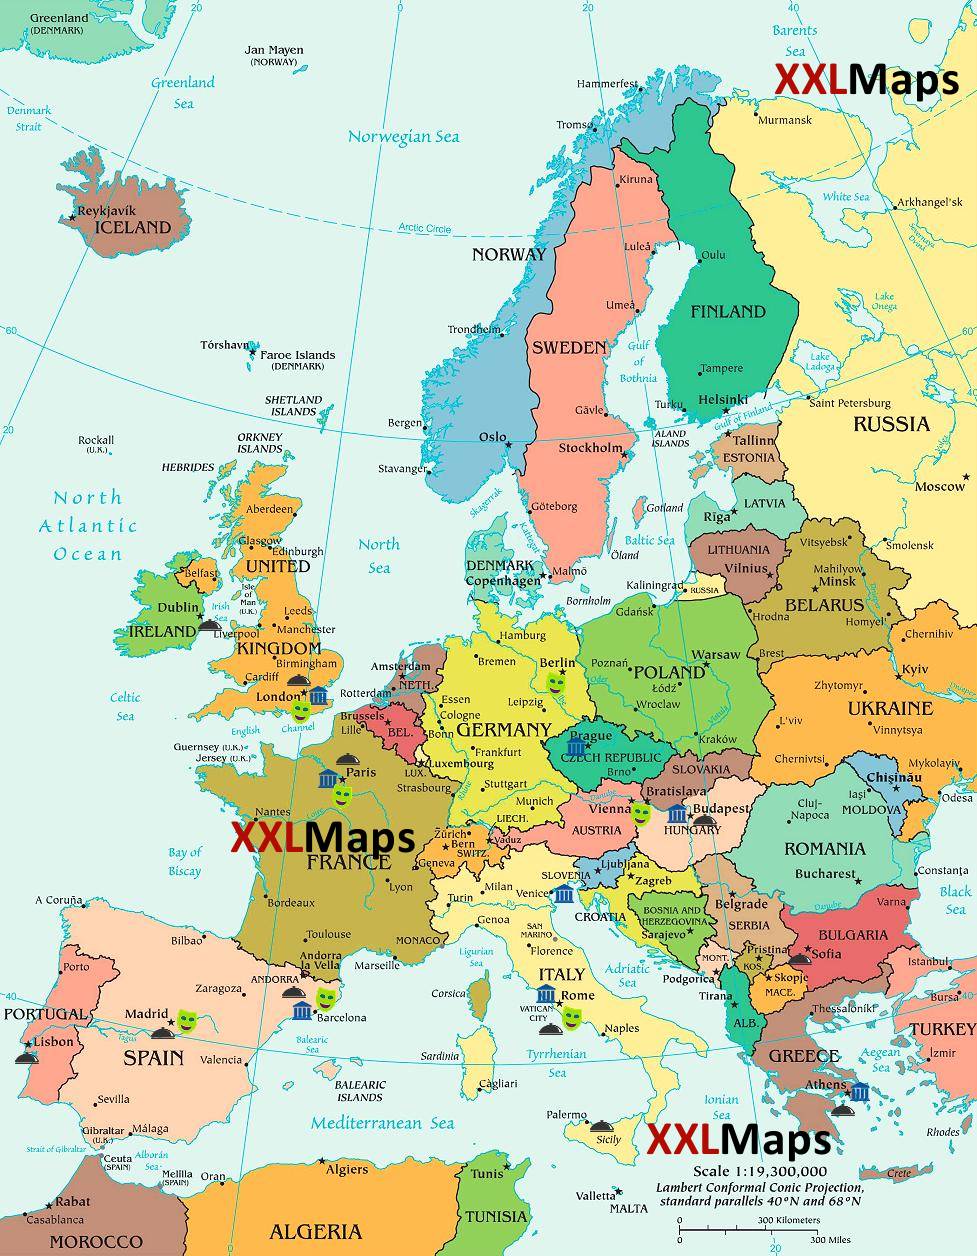 Politieke kaart van Europa